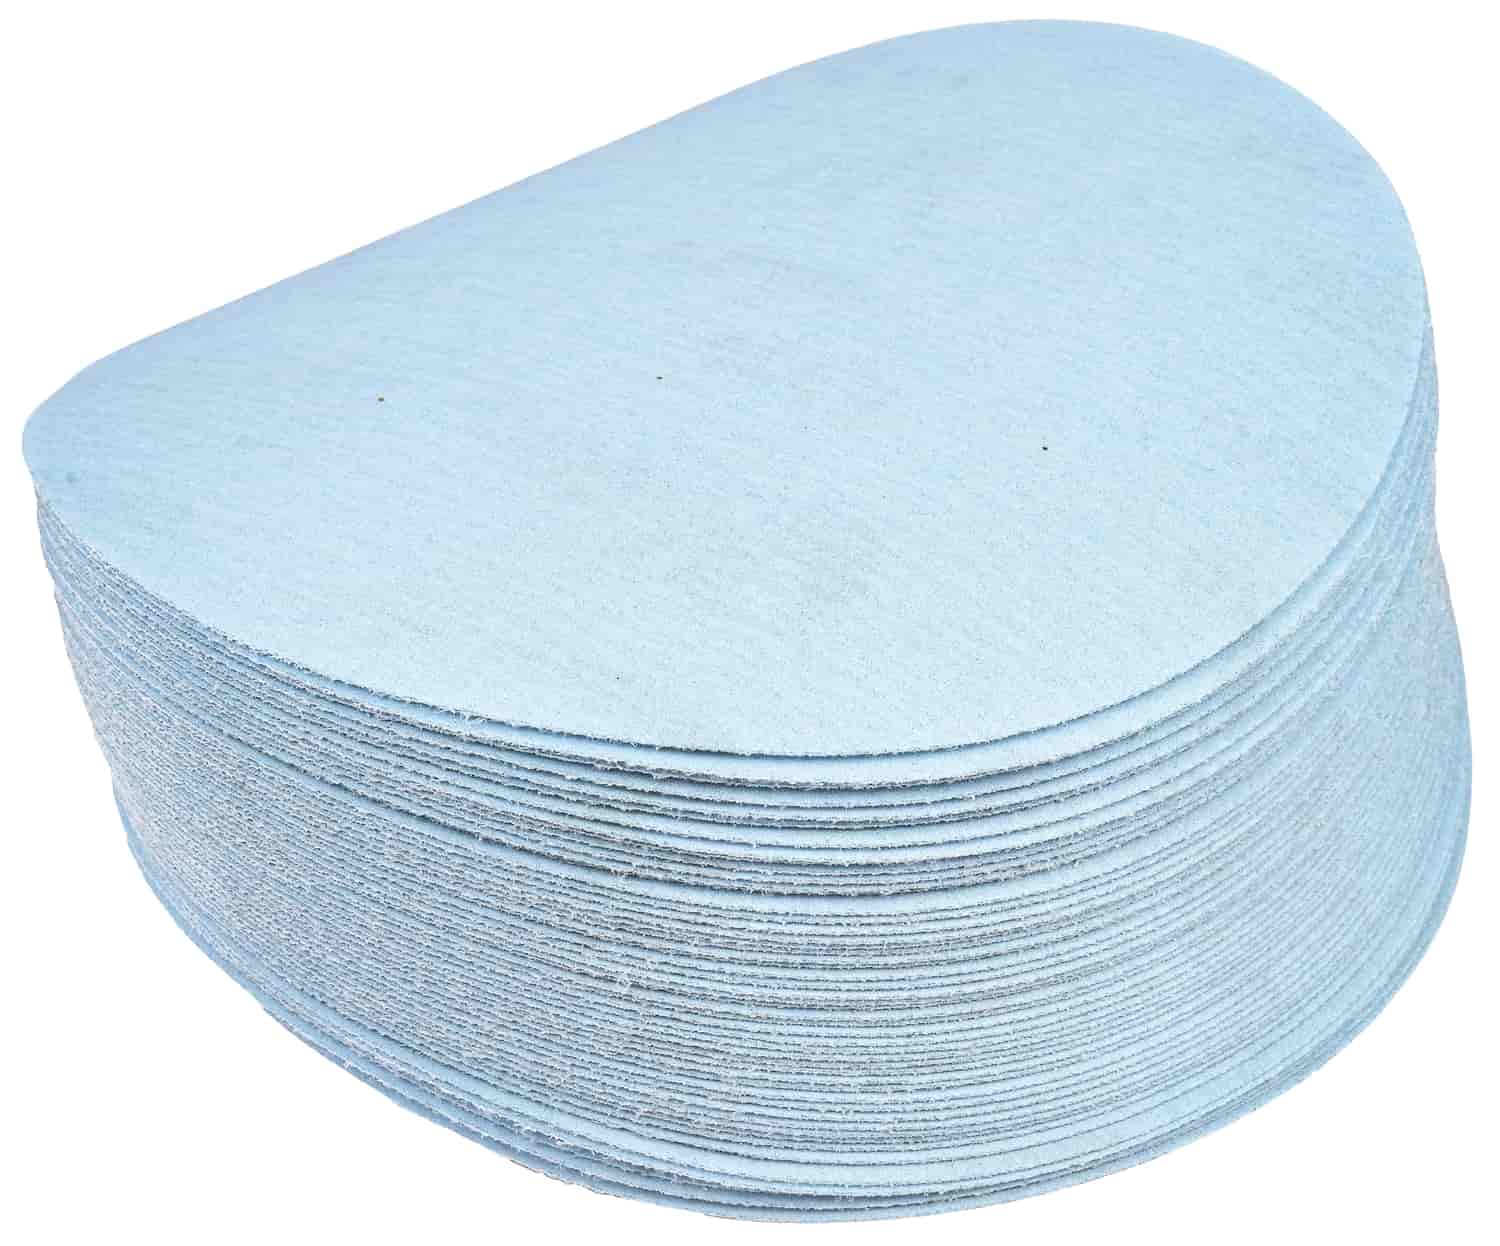 Automotive Sandpaper Discs [320 Grit]